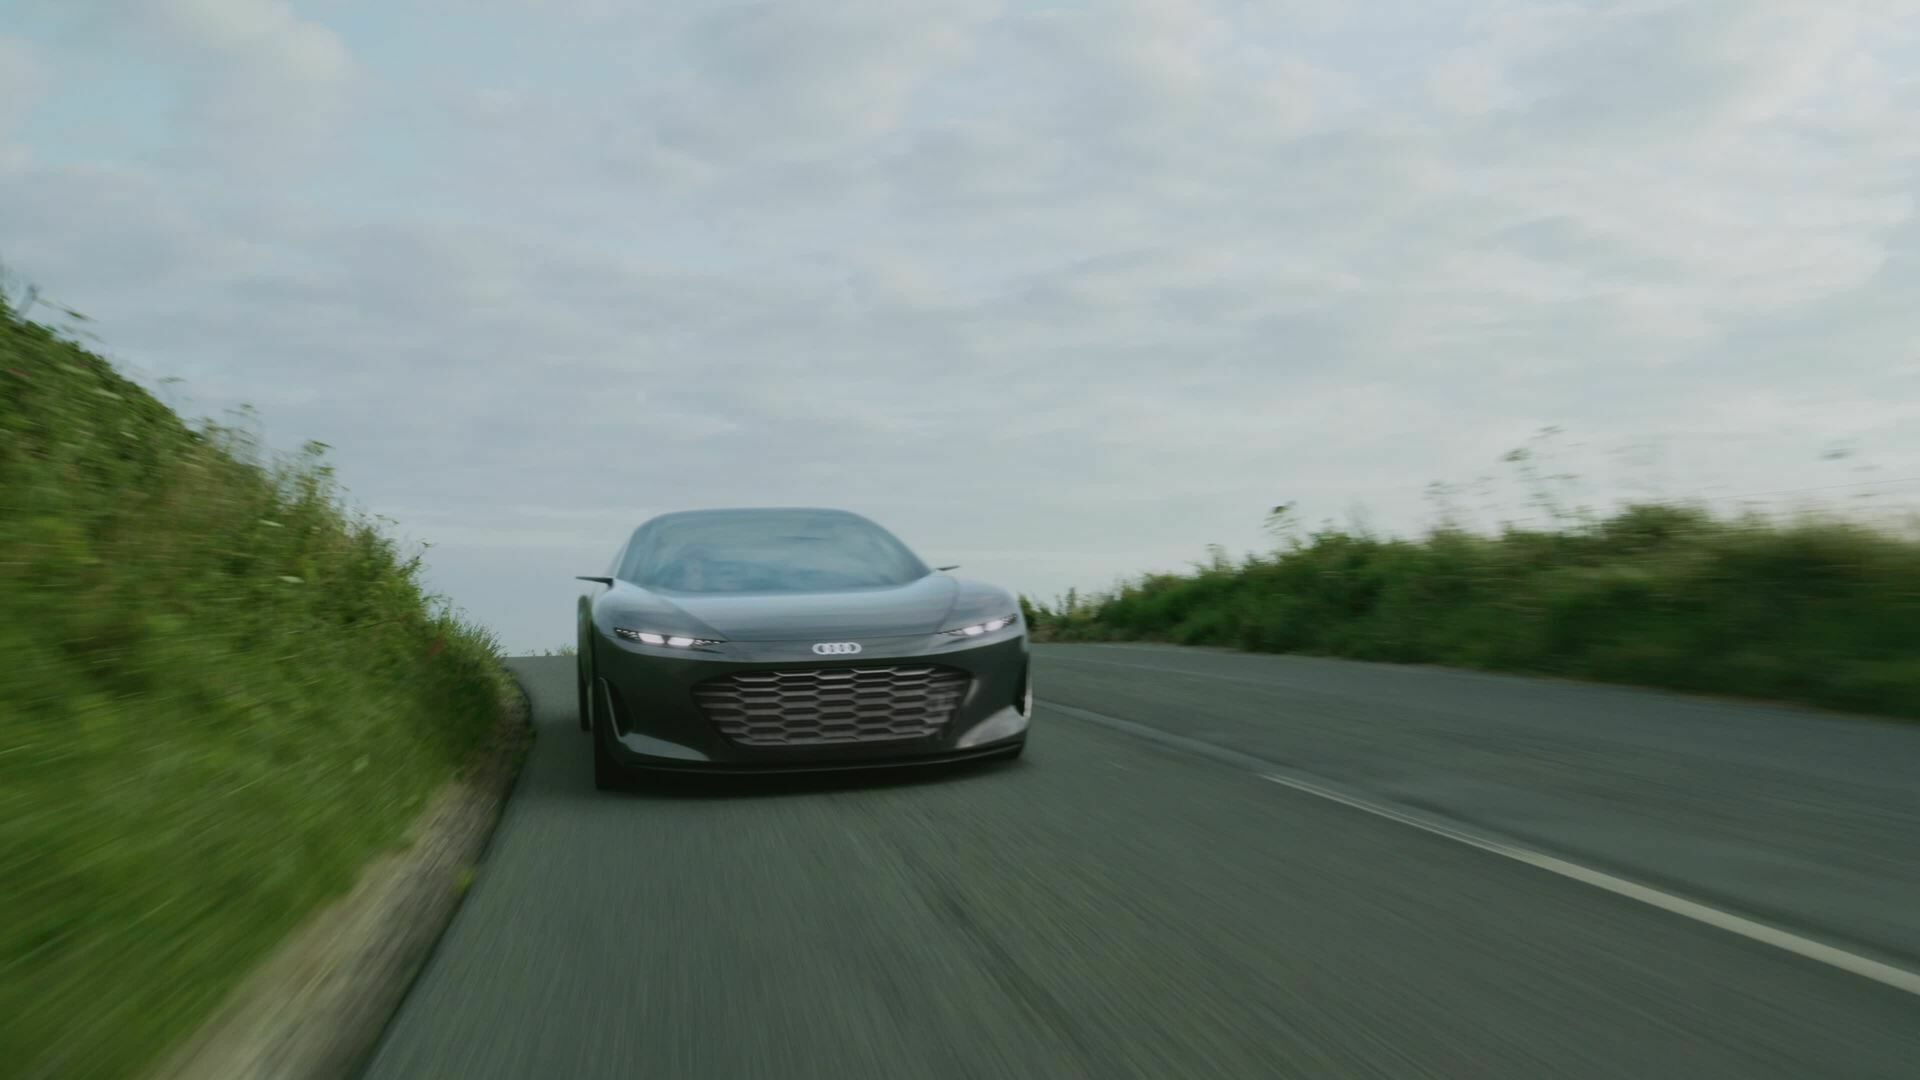 Footage: Fahraufnahmen des Audi grandsphere concept